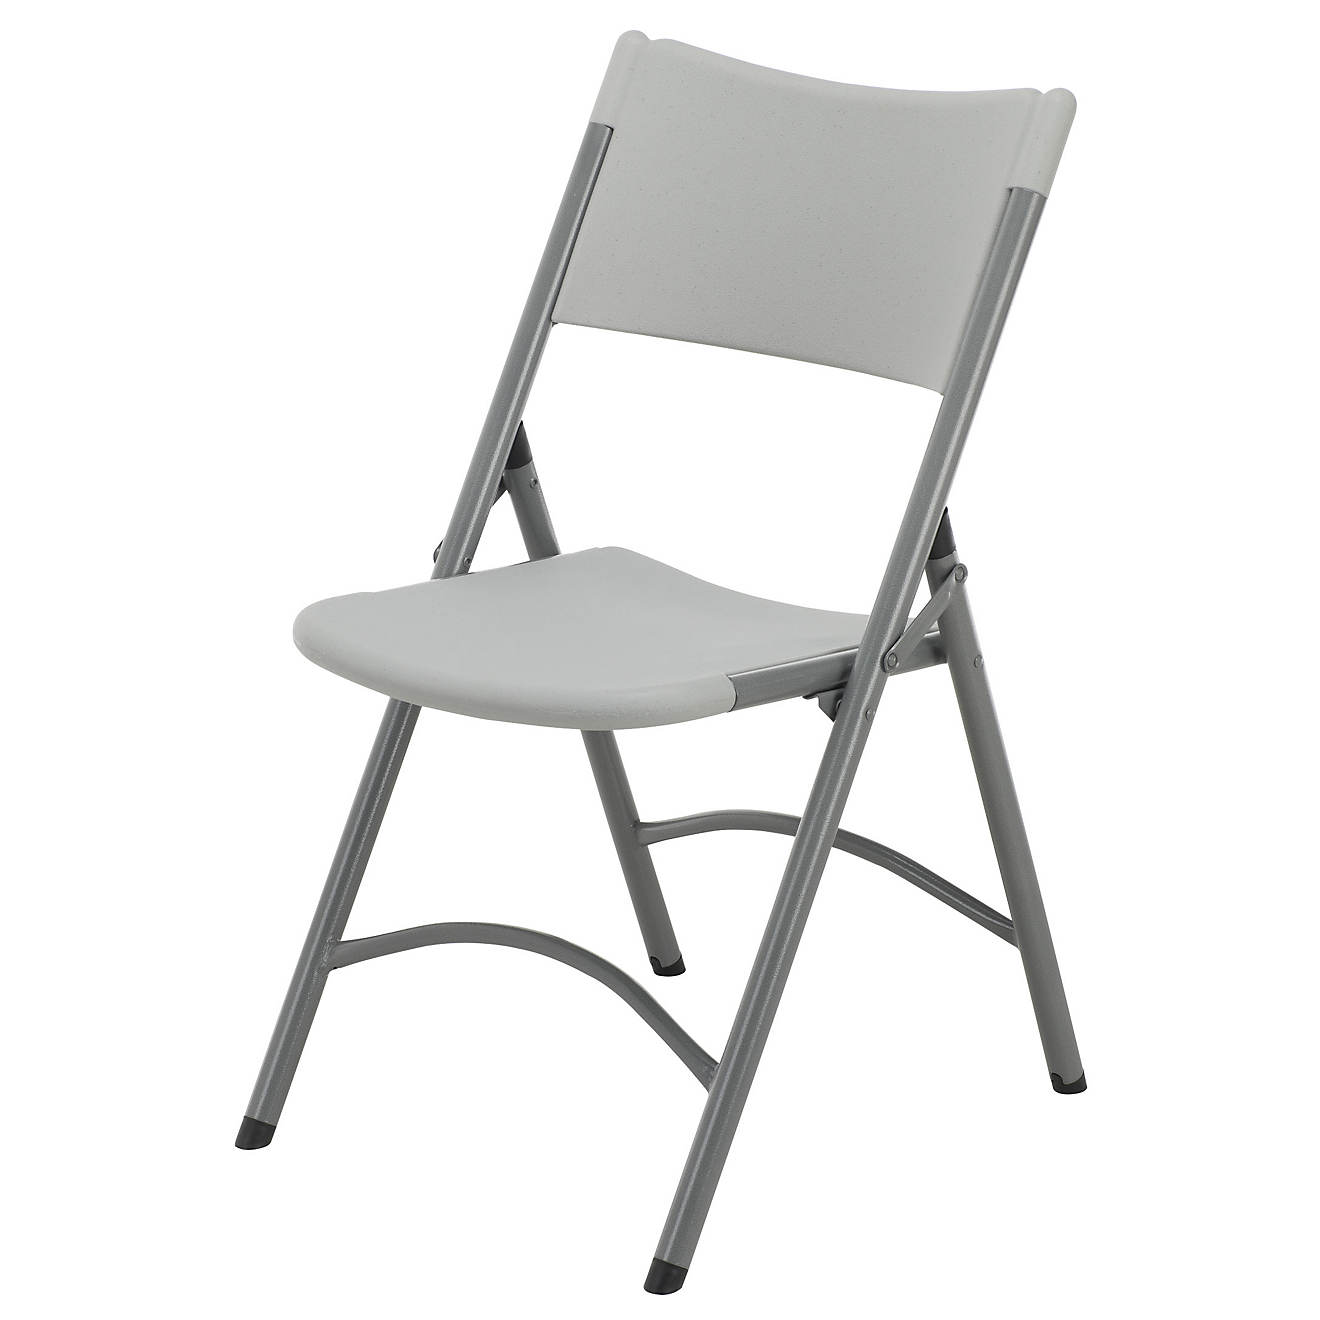 Academy Sports + Outdoors Polyethylene Folding Chair | Academy